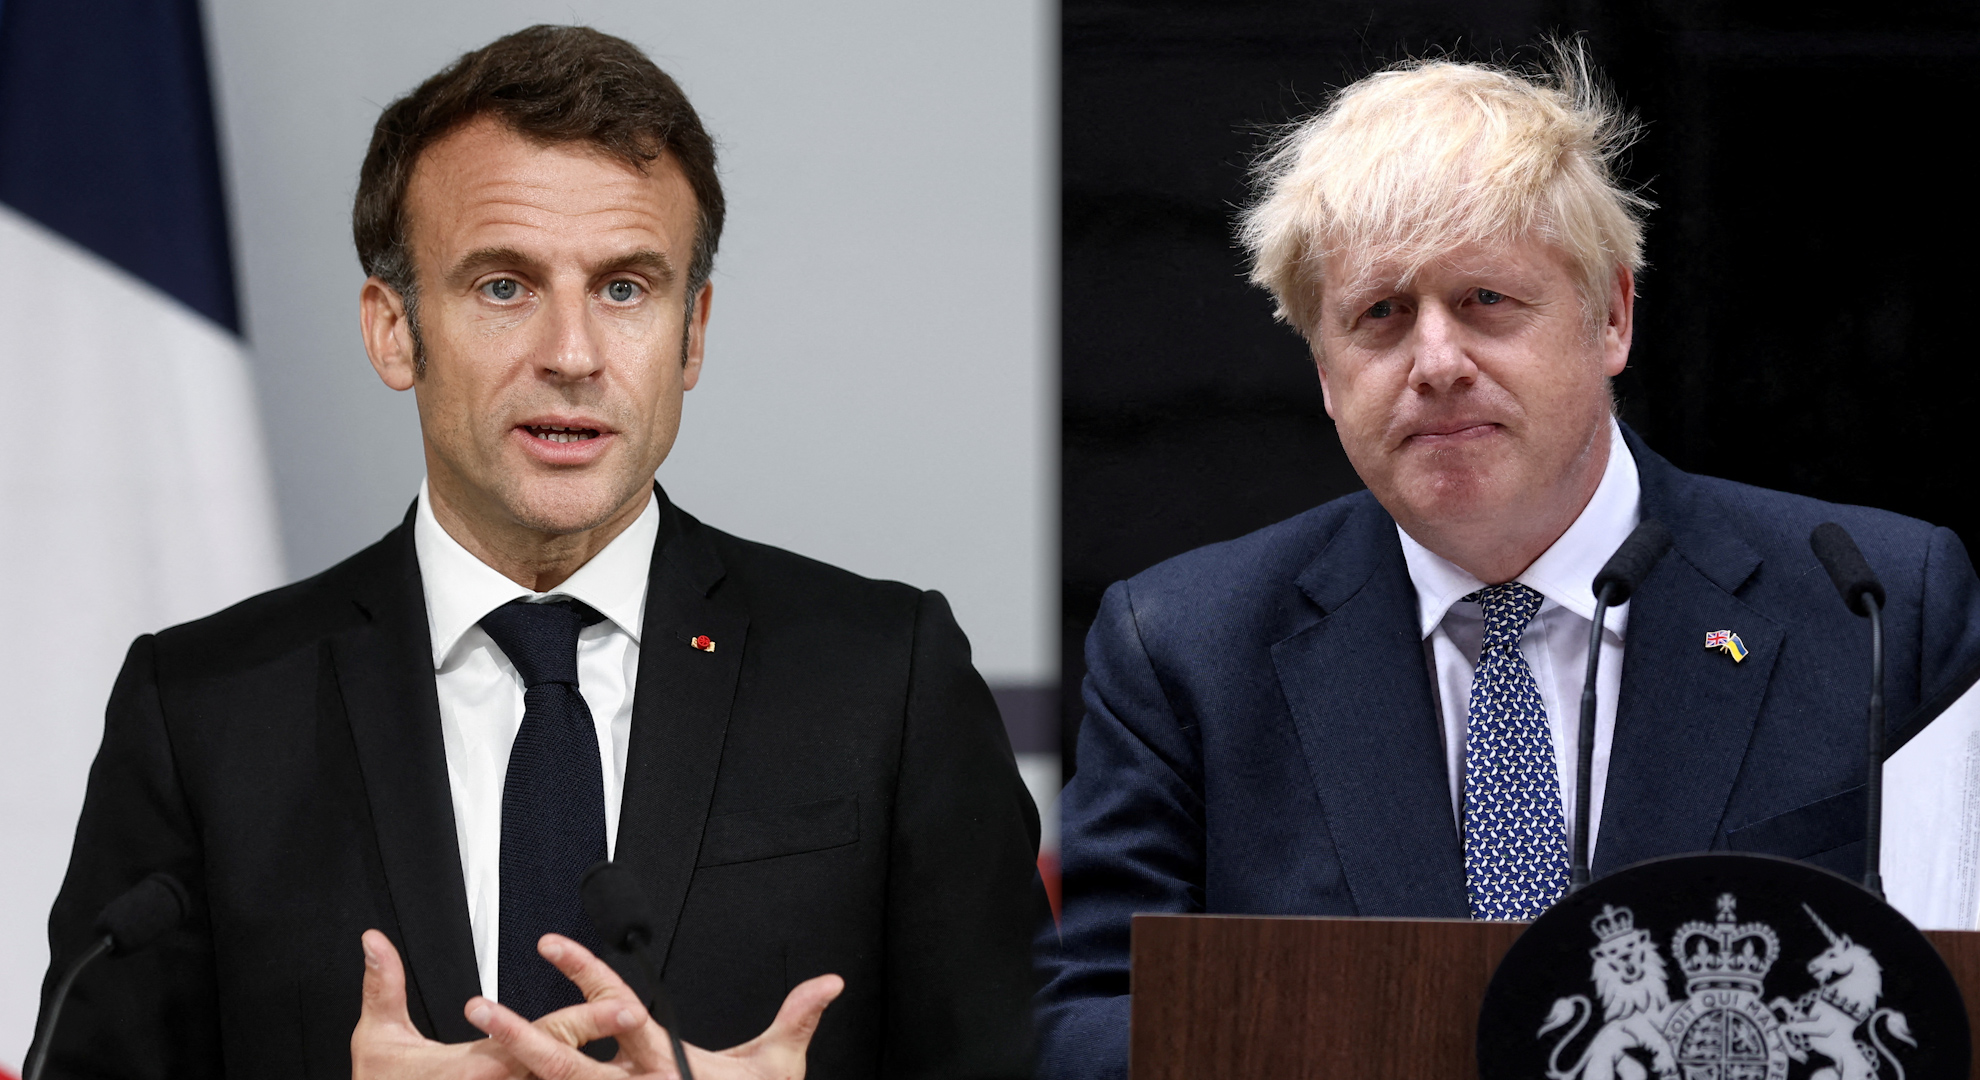 “Tare”, “Putin’s bootlicker”: when Boris Johnson attacked Emmanuel Macron